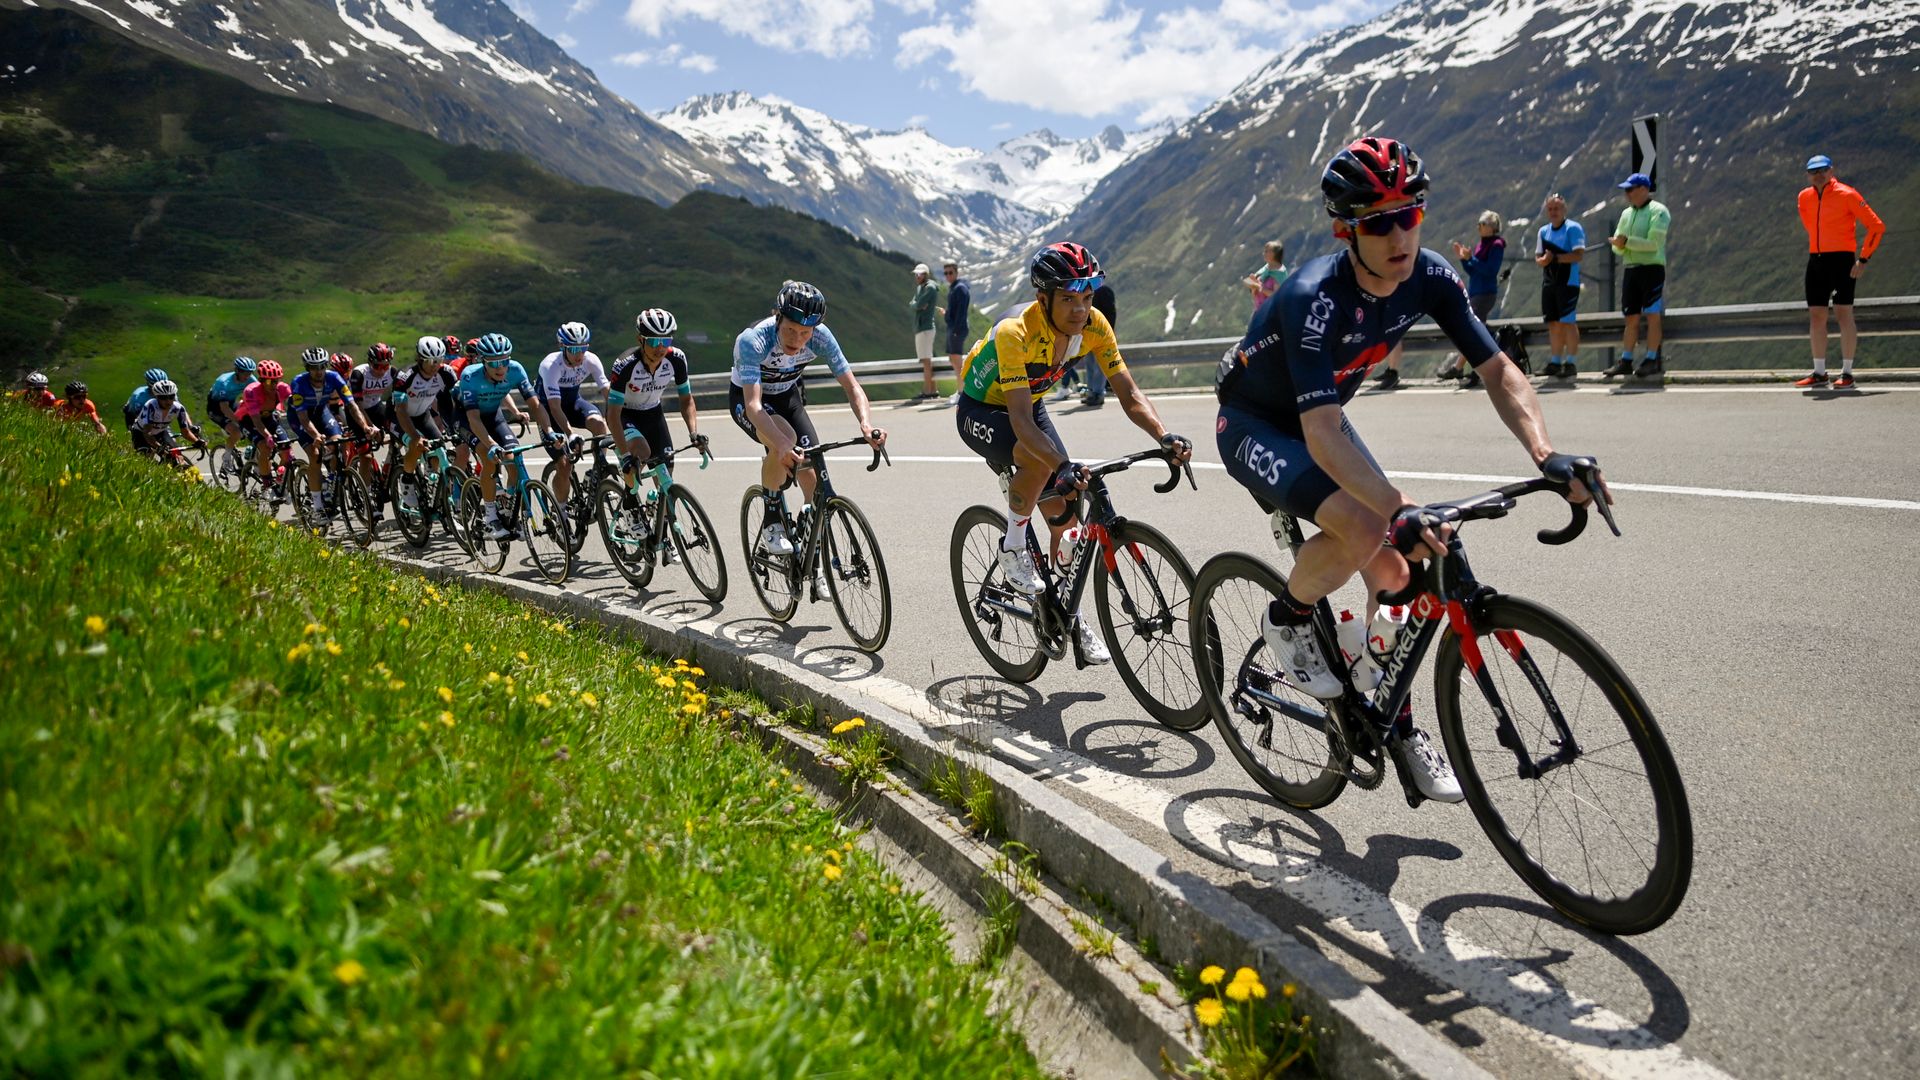 Covid outbreak raises concerns ahead of Tour de France